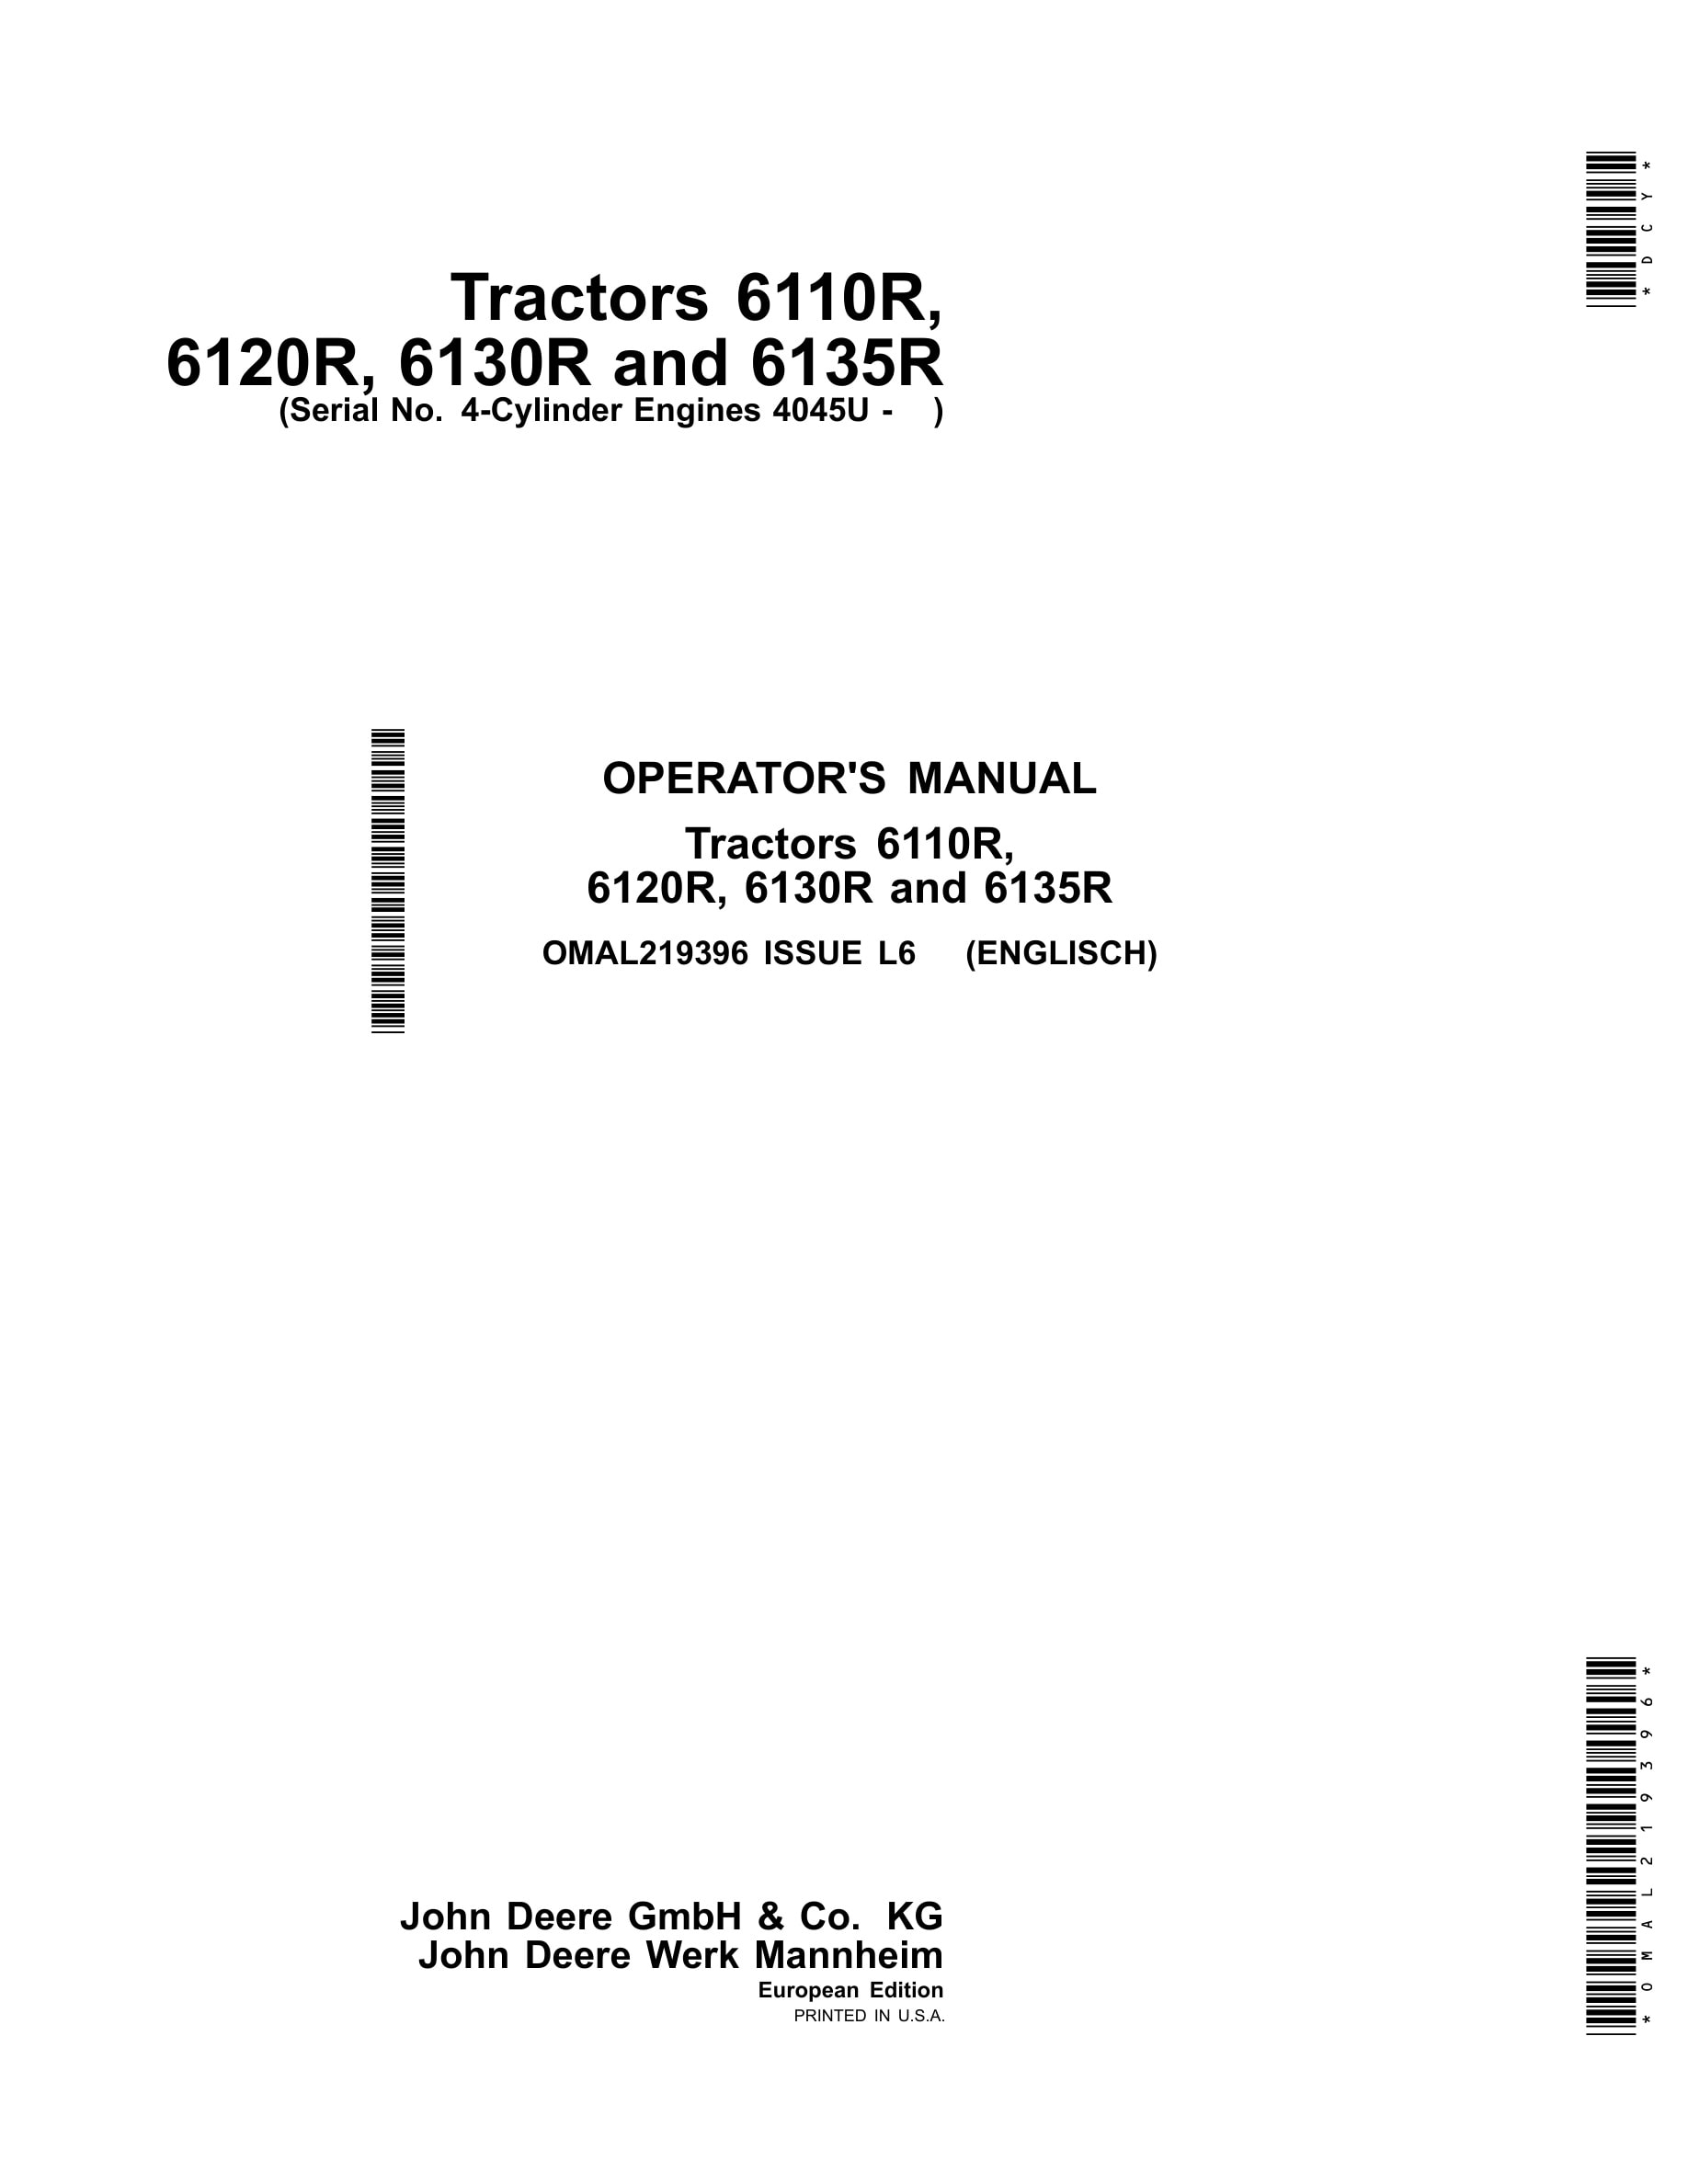 John Deere 6110r, 6120r, 6130r And 6135r Tractors Operator Manuals OMAL219396-1